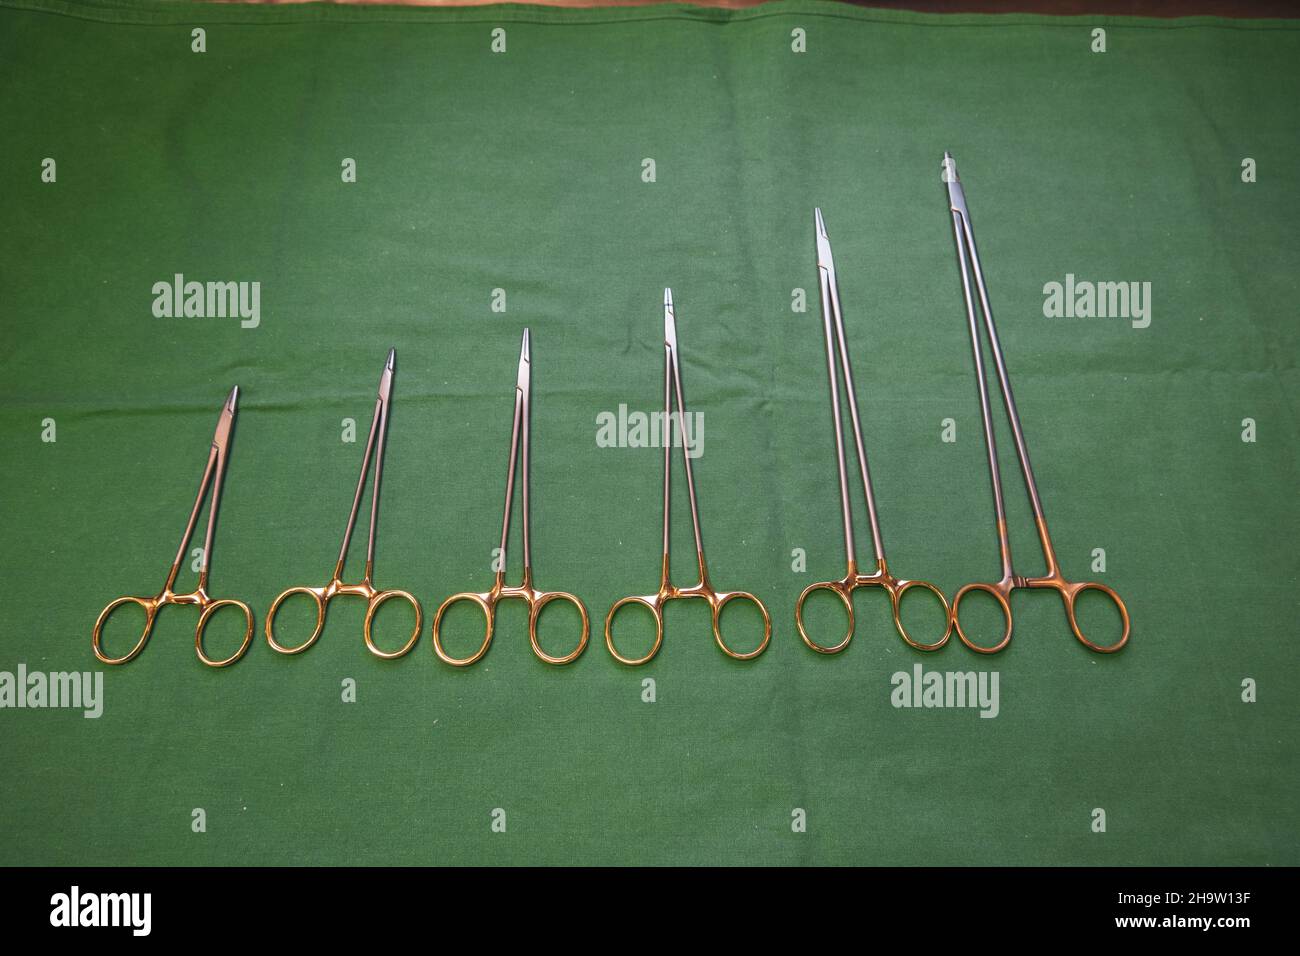 Chirurgische Nadelhalter unterschiedlicher Größe liegen nebeneinander auf einer grünen Basis Stockfoto